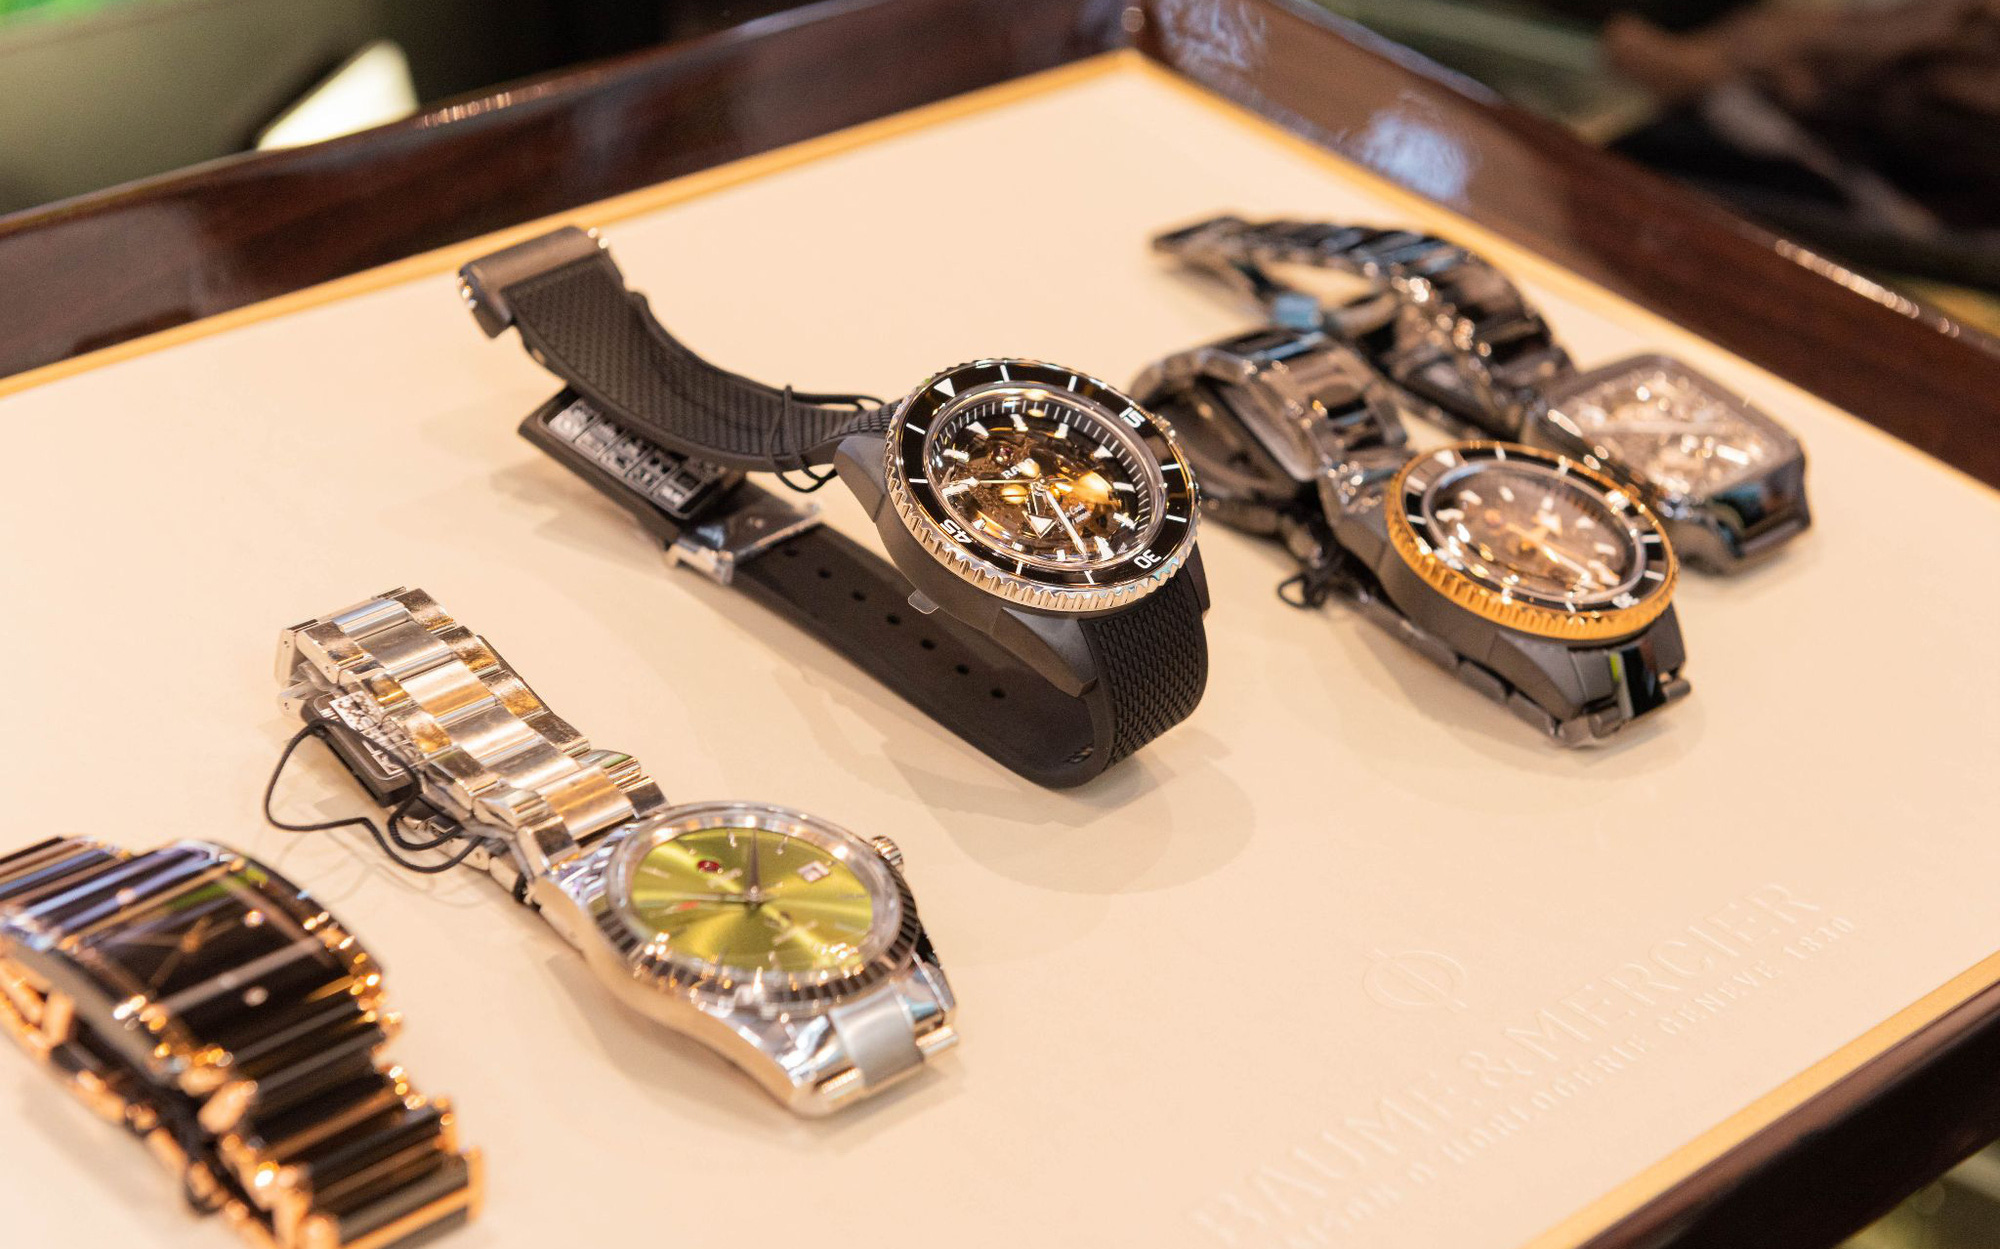 Future Time khai trương cửa hàng tại Hà Nội với nhiều mẫu đồng hồ sang trọng, mới lạ